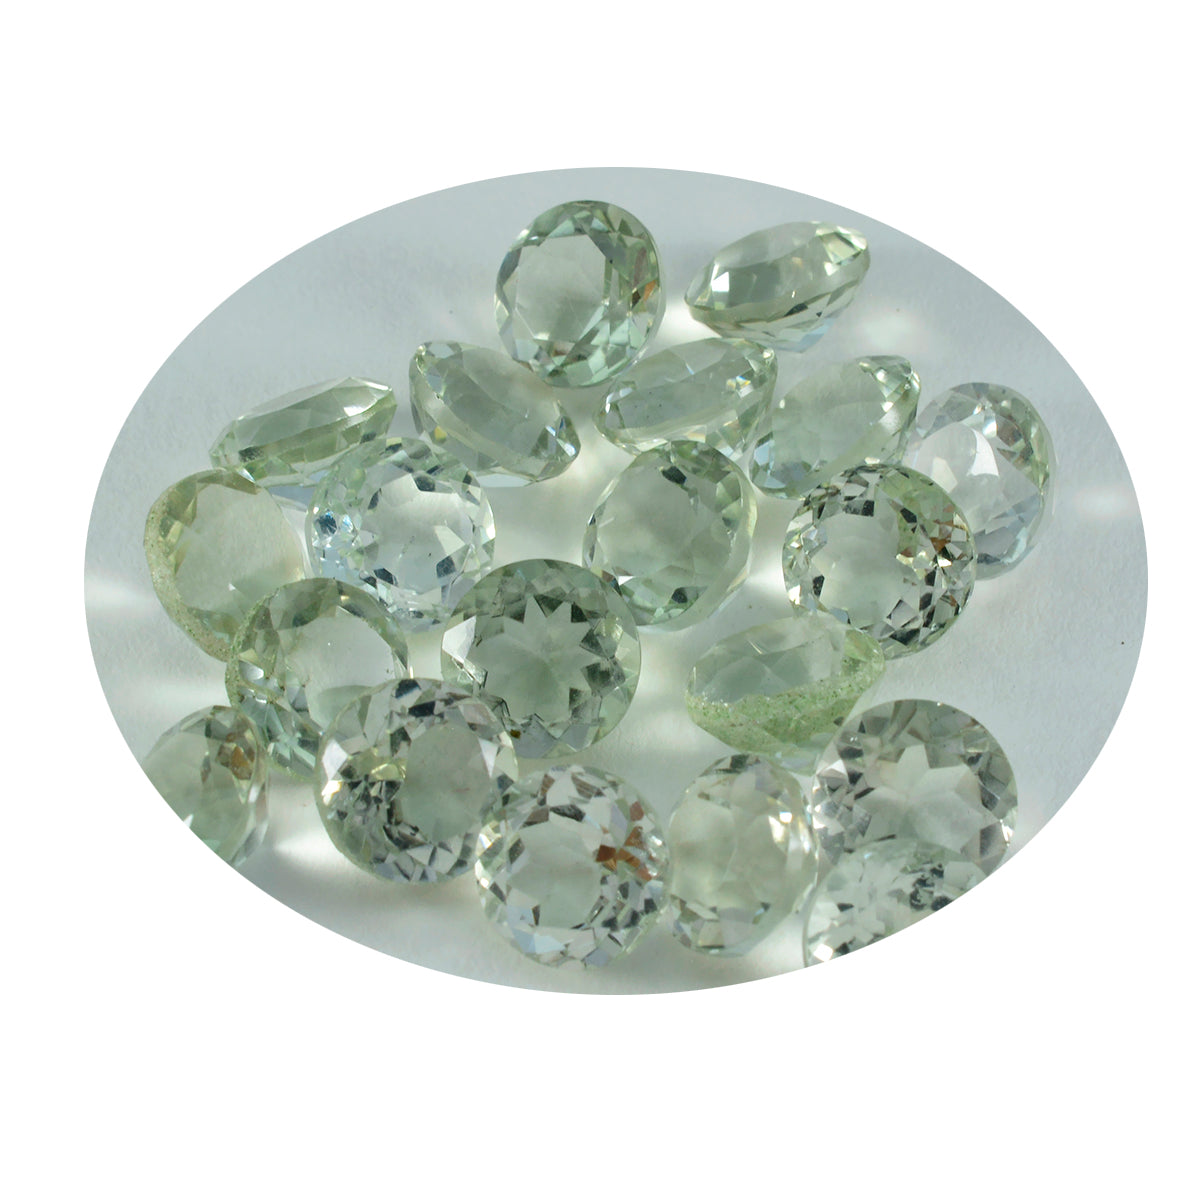 Riyogems 1 pieza de amatista verde facetada de 7x7 mm, forma redonda, piedra preciosa suelta de excelente calidad